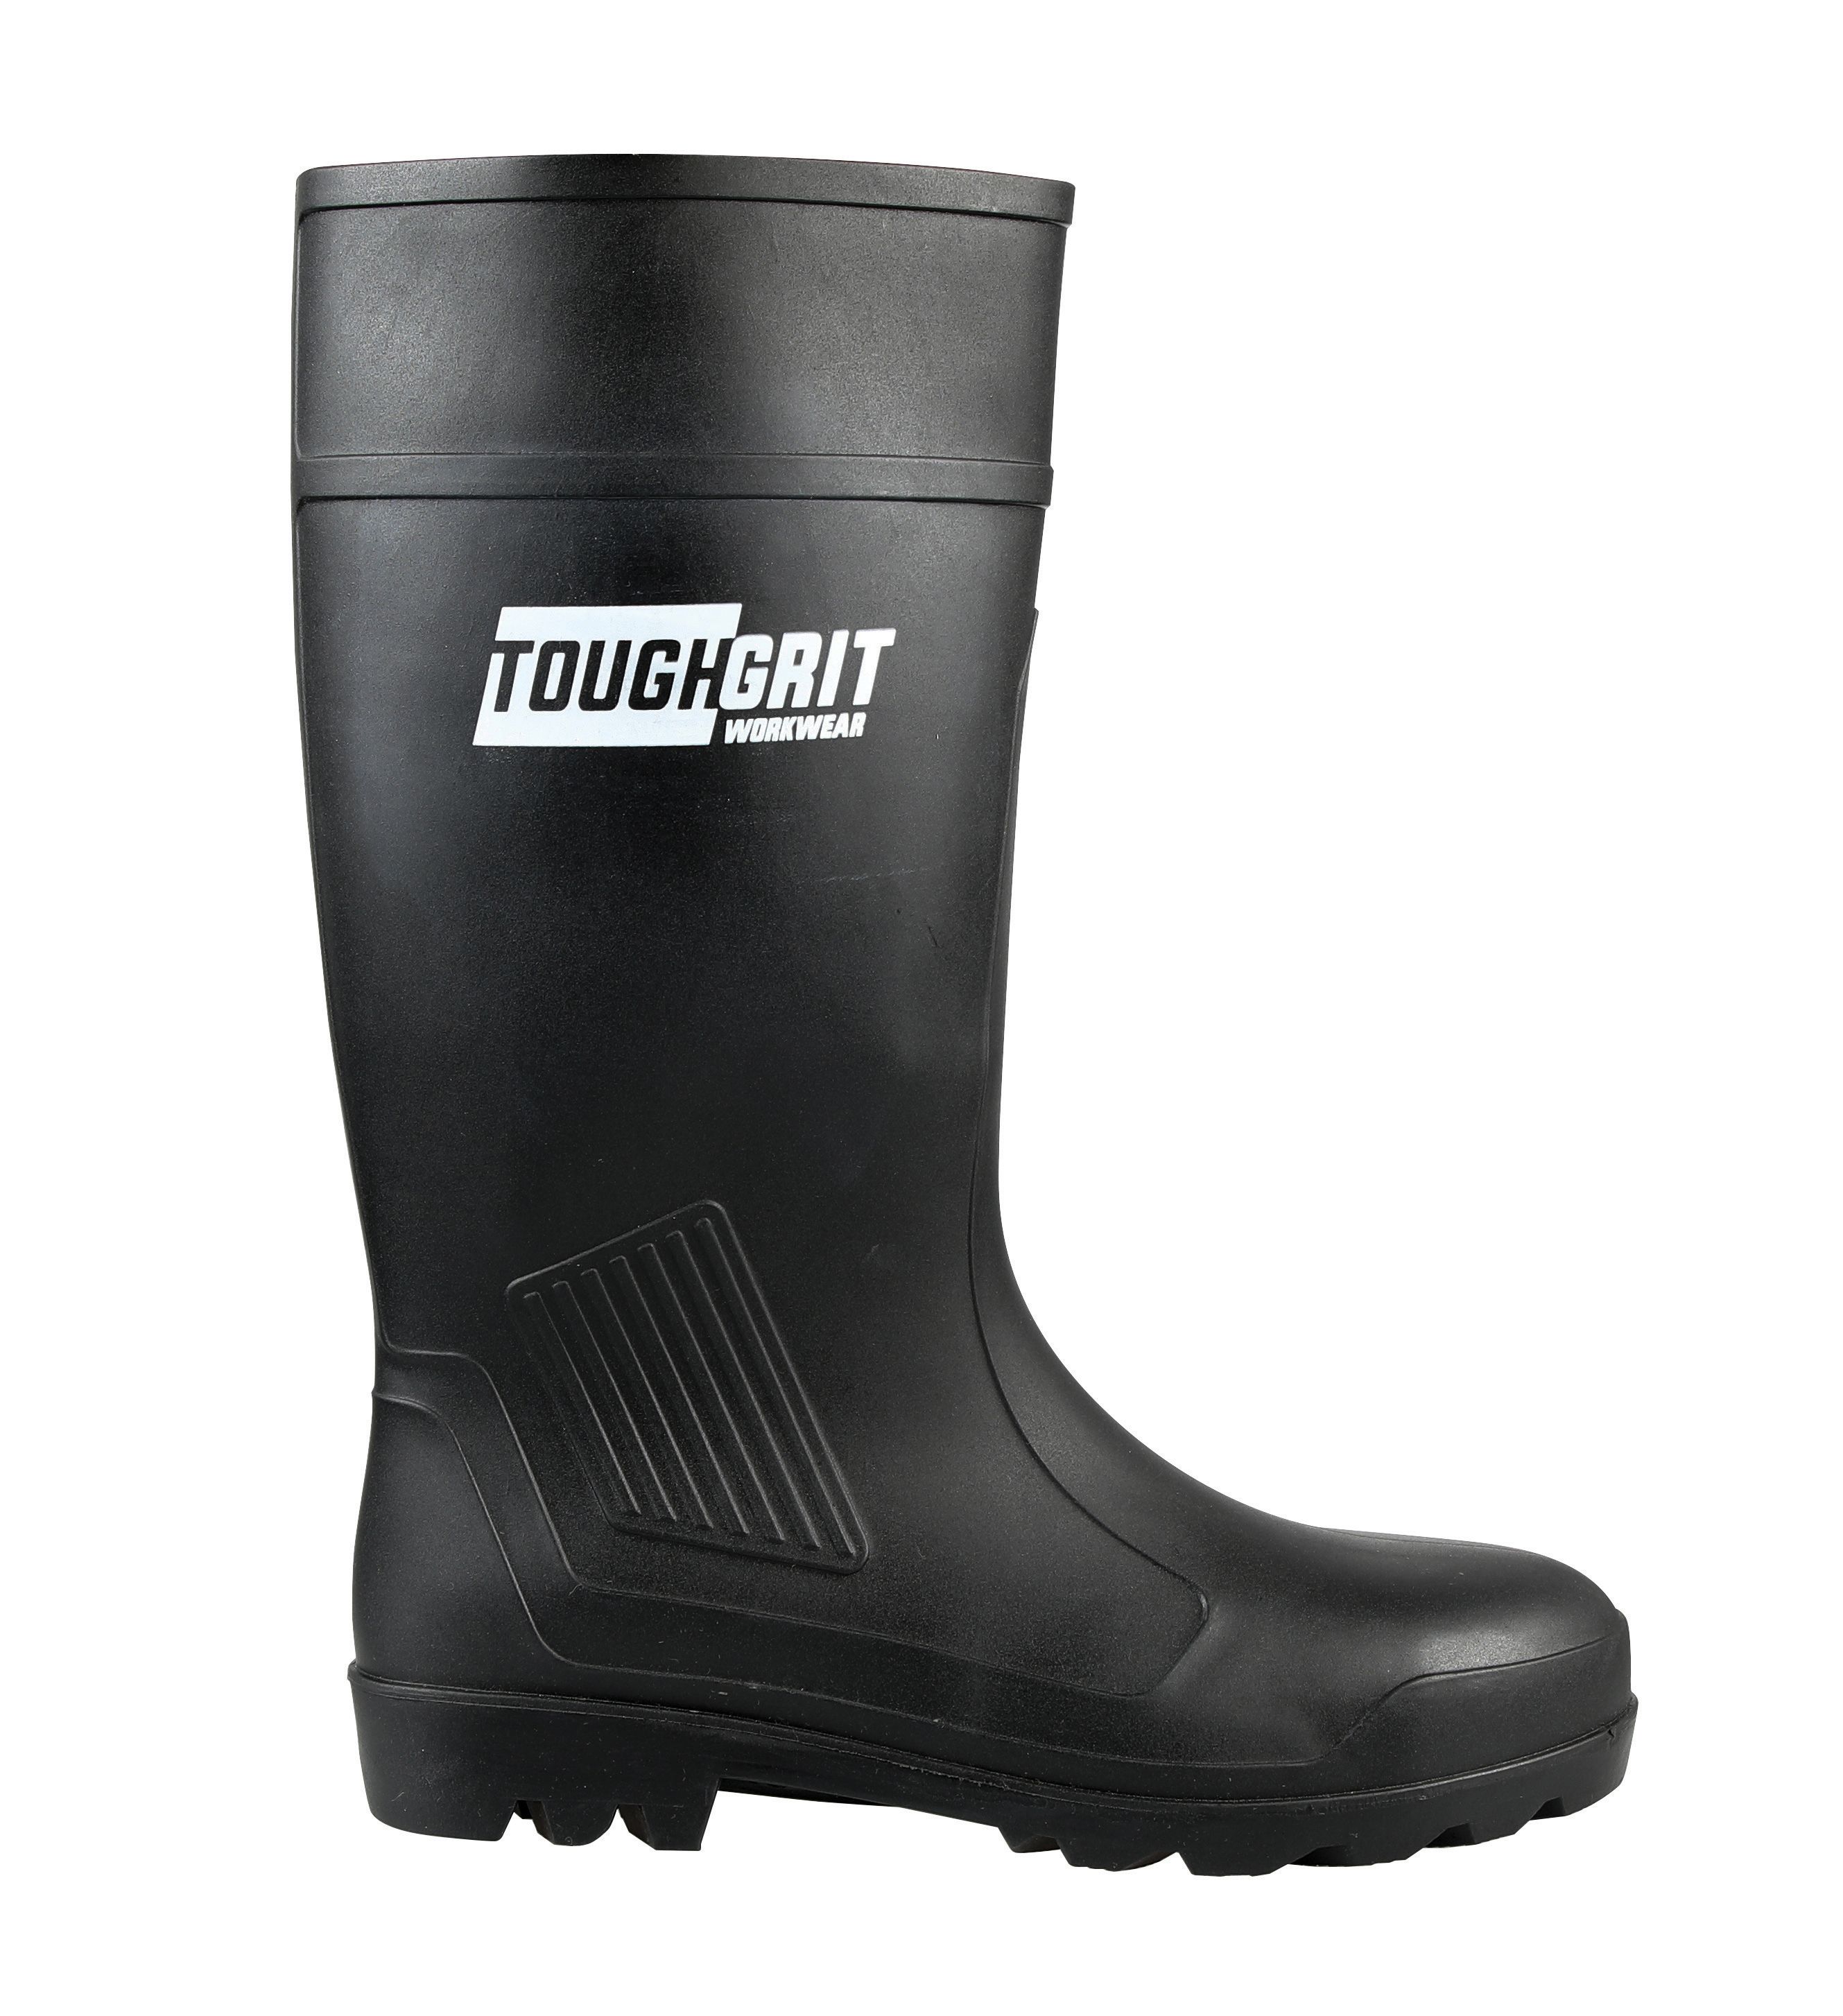 Tough Grit Larch Safety Wellington Boot - Black Size 10